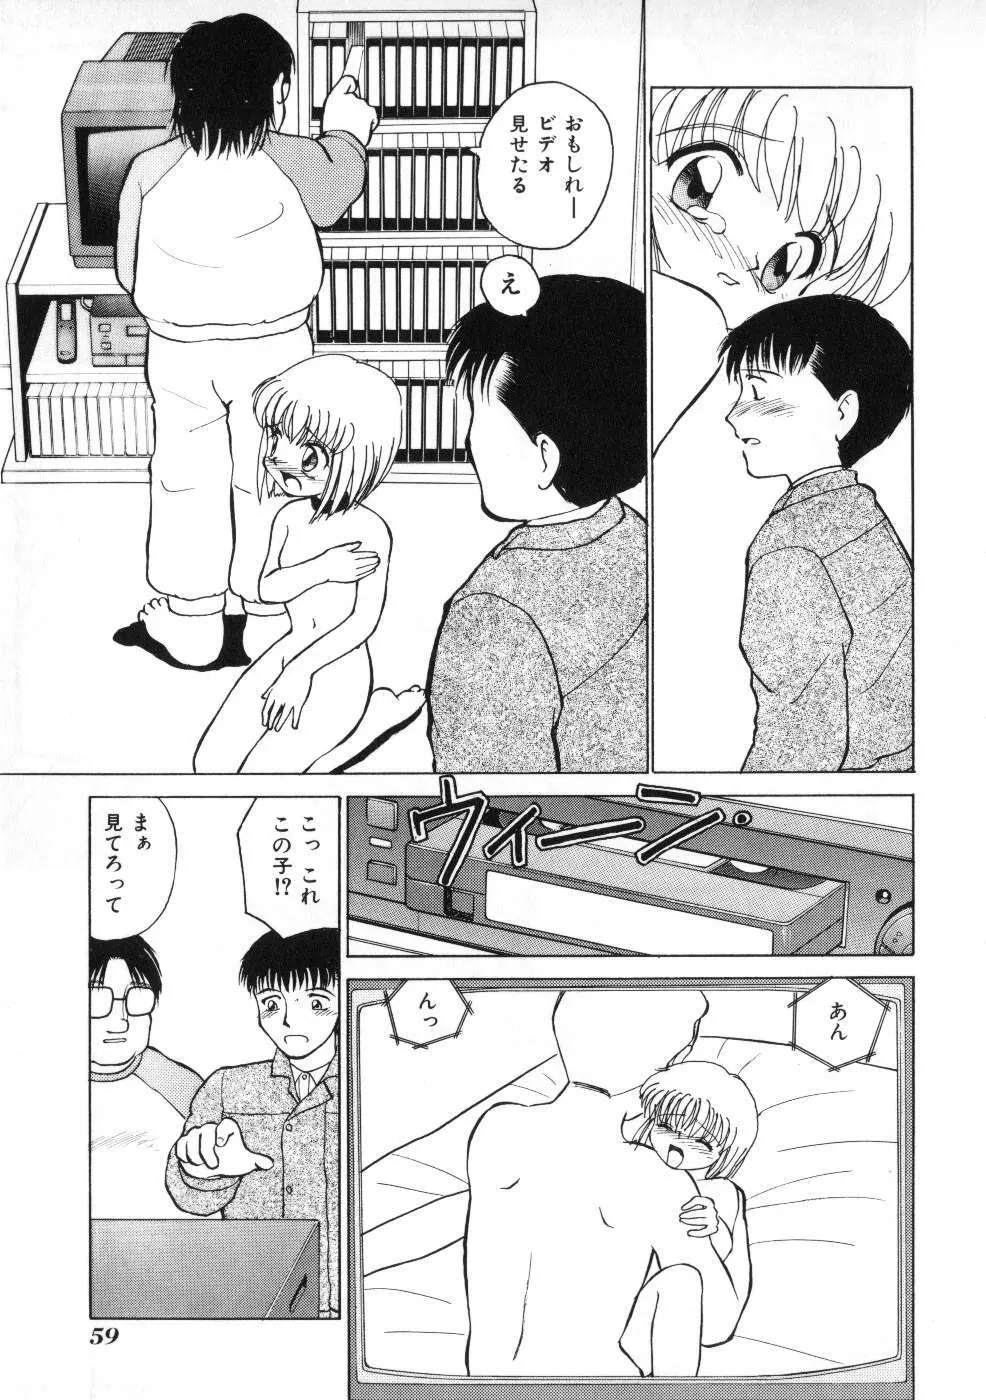 Miss ちゃいどる vol. 1 59ページ